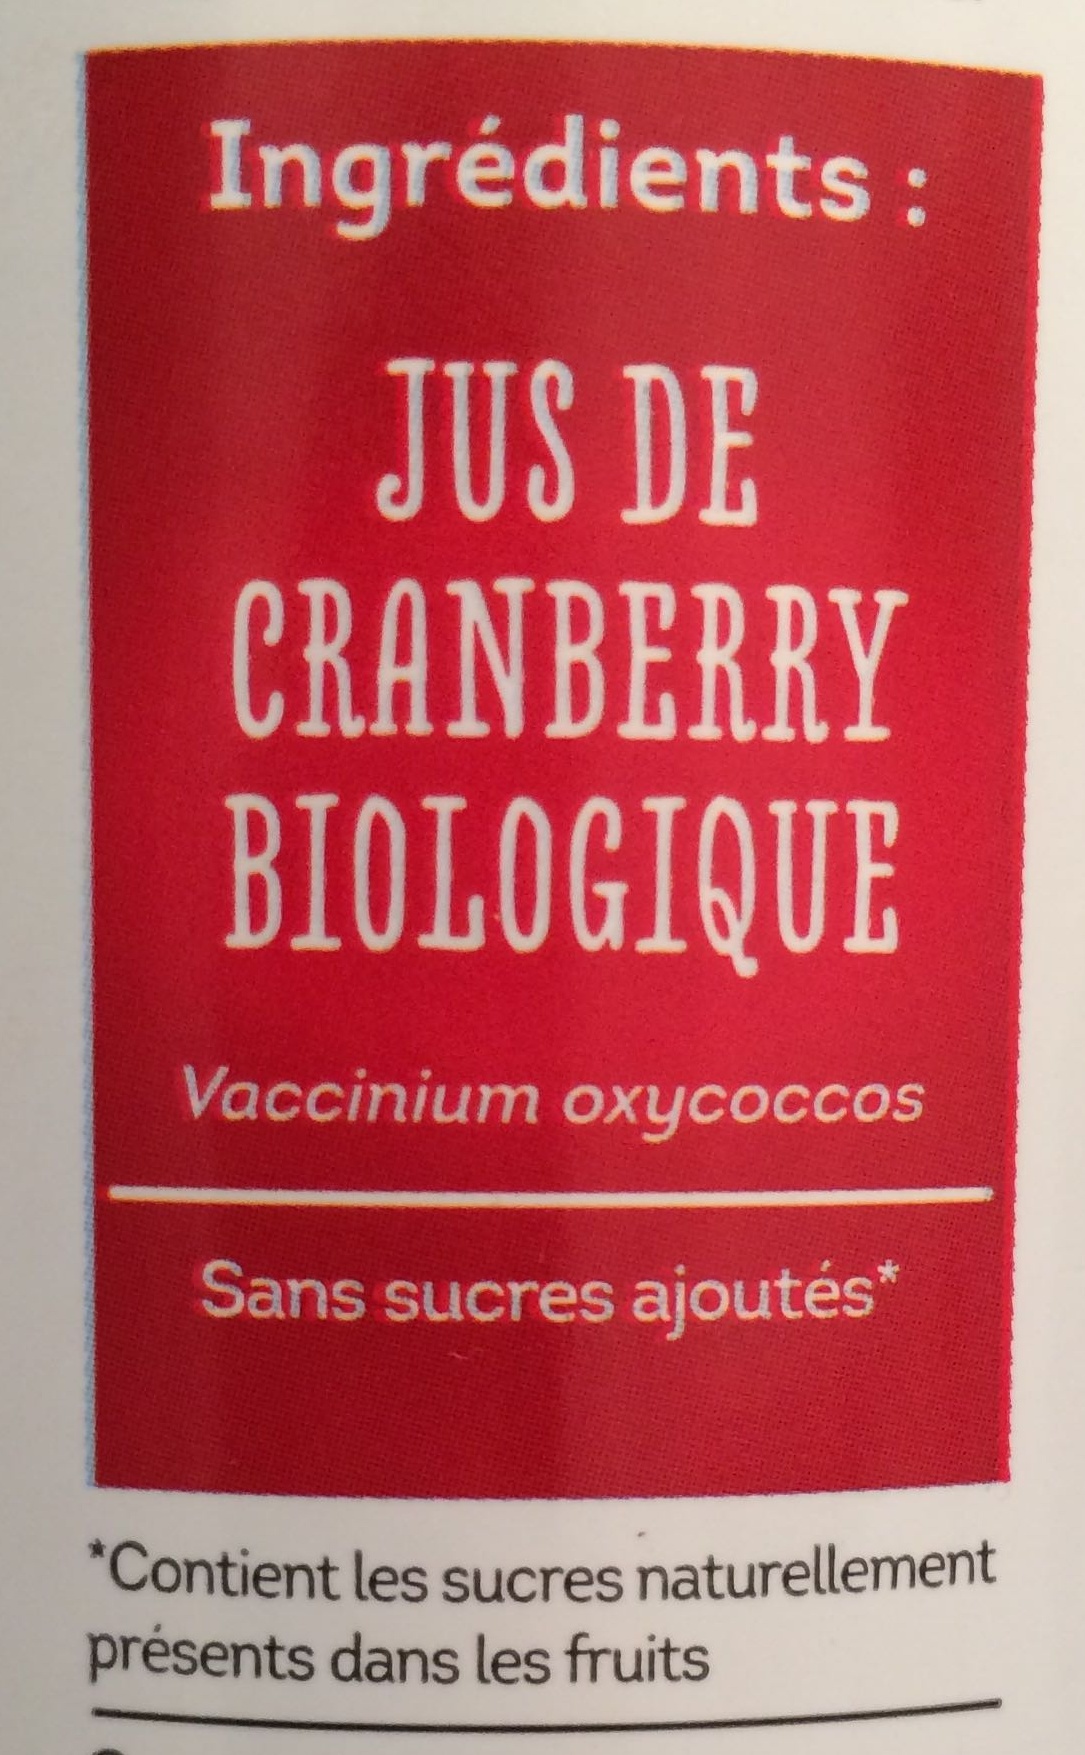 100 PUR JUS de cranberry - Ingrédients